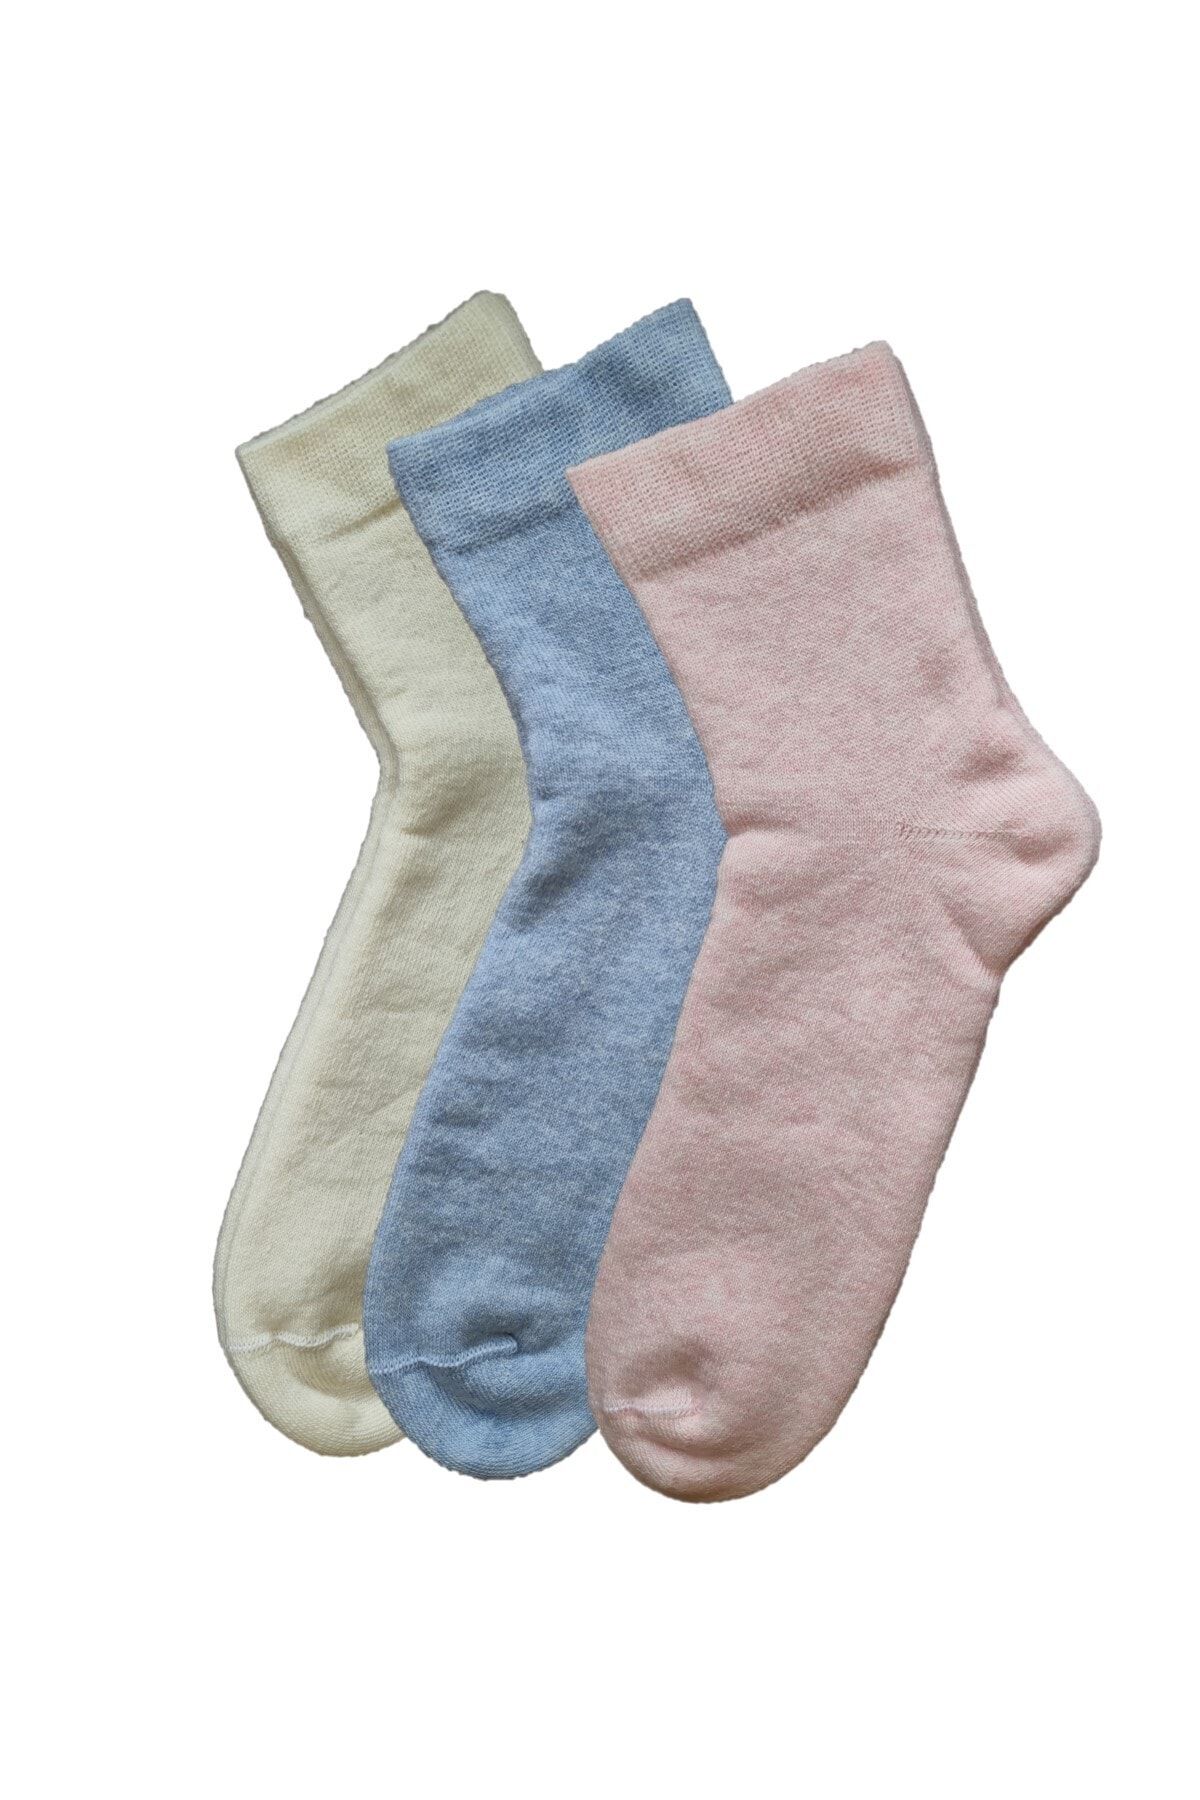 Doğanay 3'lü Kadın Çorap Havlu Kışlık Soft Ev Çorabı Yüksek Pamuklu Dikişsiz